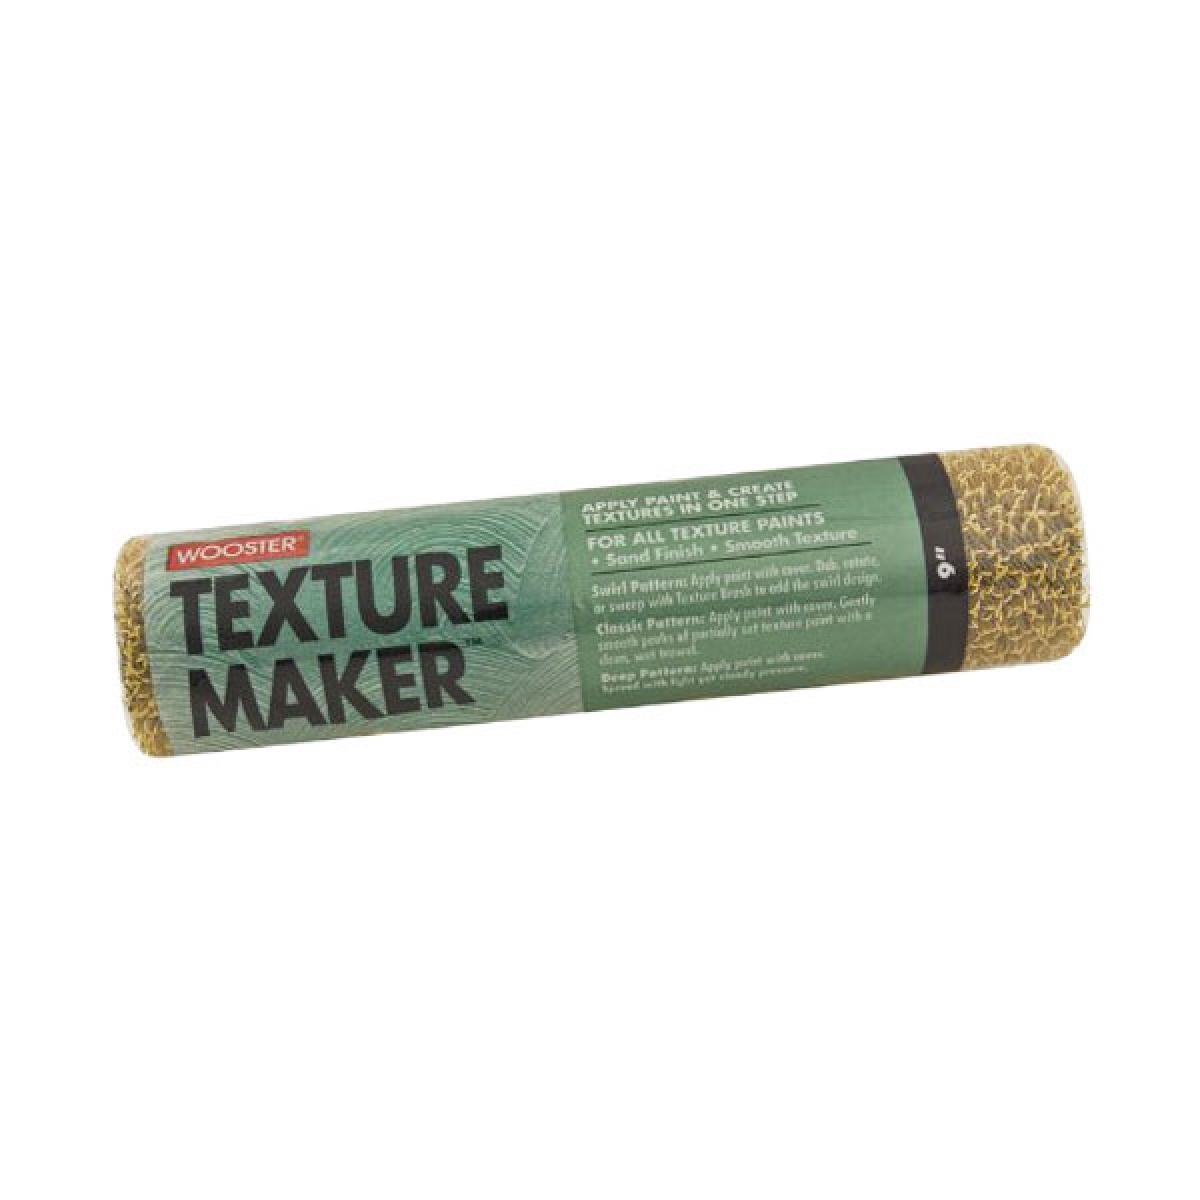 Wooster Texture Maker Paint Roller Sleeve 230mm